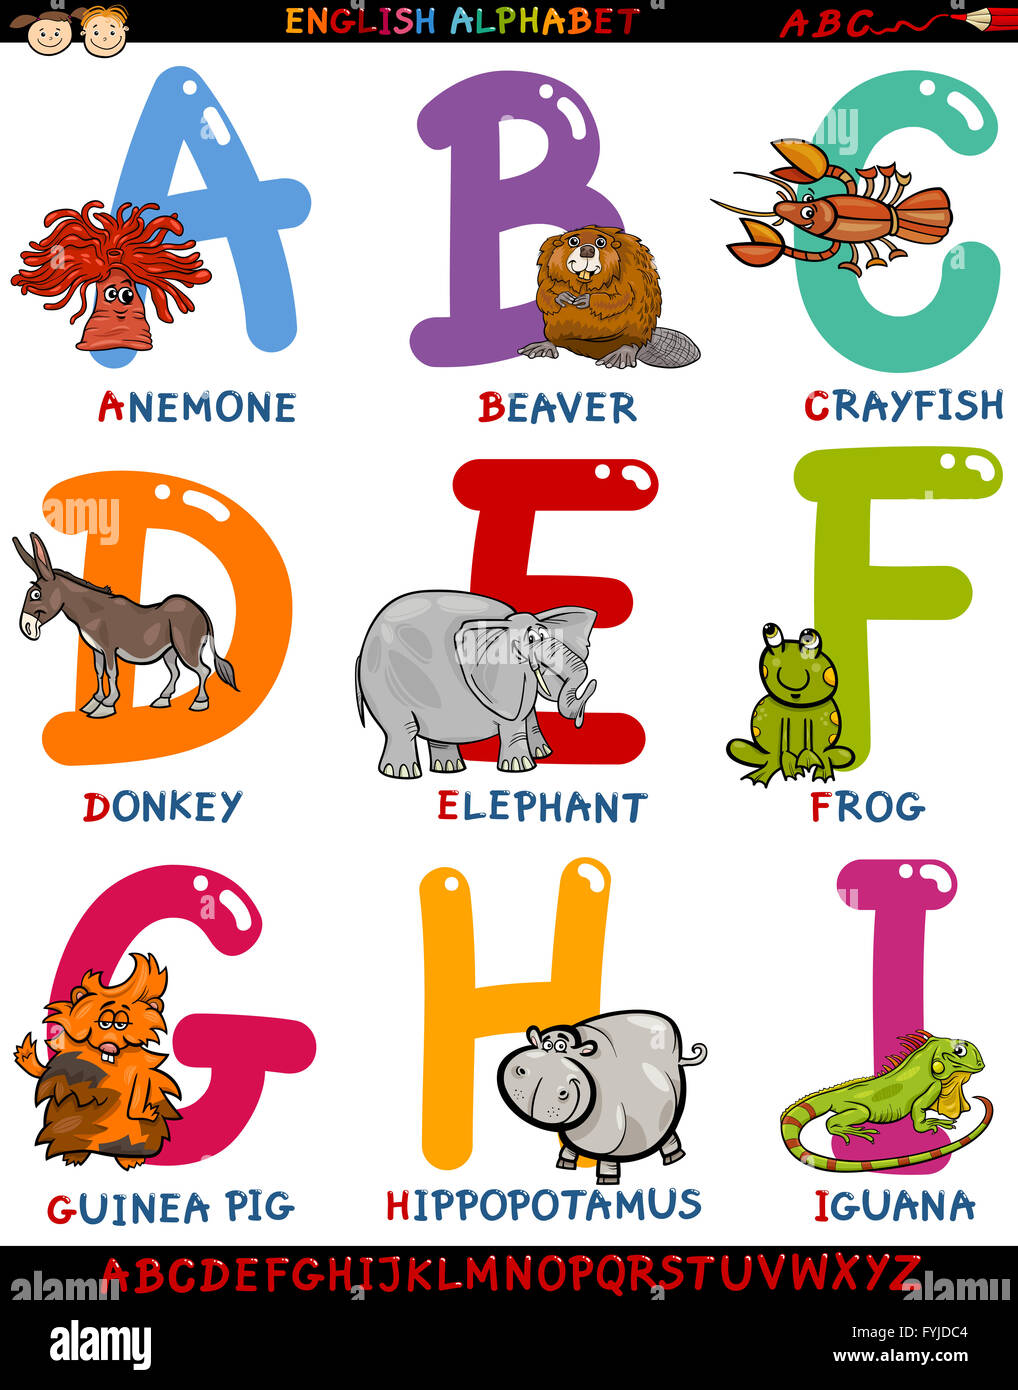 Alfabeto Inglés de dibujos animados con animales Fotografía de stock - Alamy